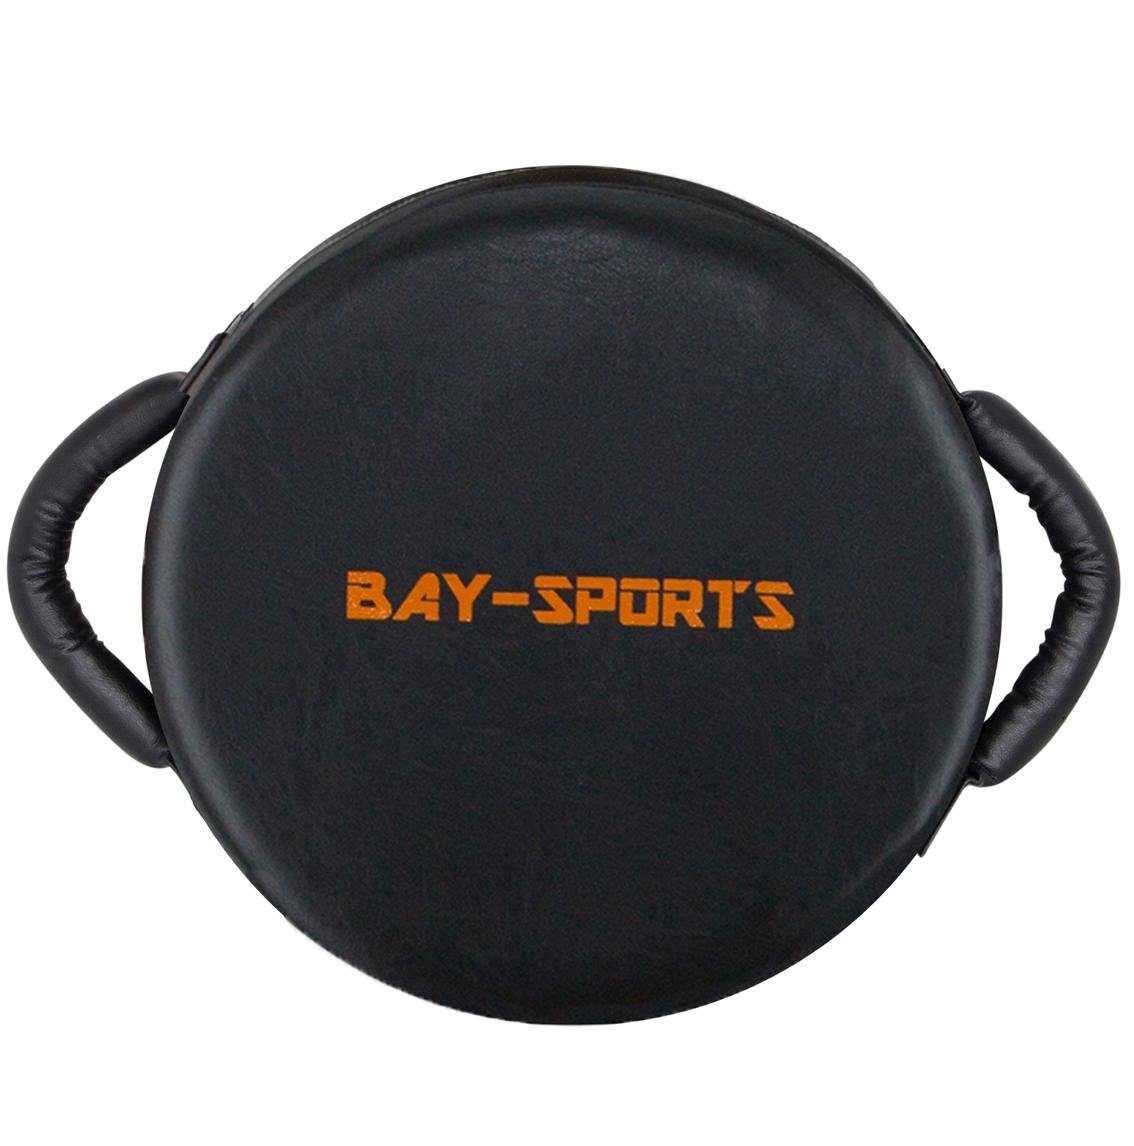 BAY-Sports Pratzen UFO Schlagpolster Rund mit Griffen schwarz/orange, Schlagkissen 34 x 13 cm, Kickboxen, Karate, MMA, Krav Maga